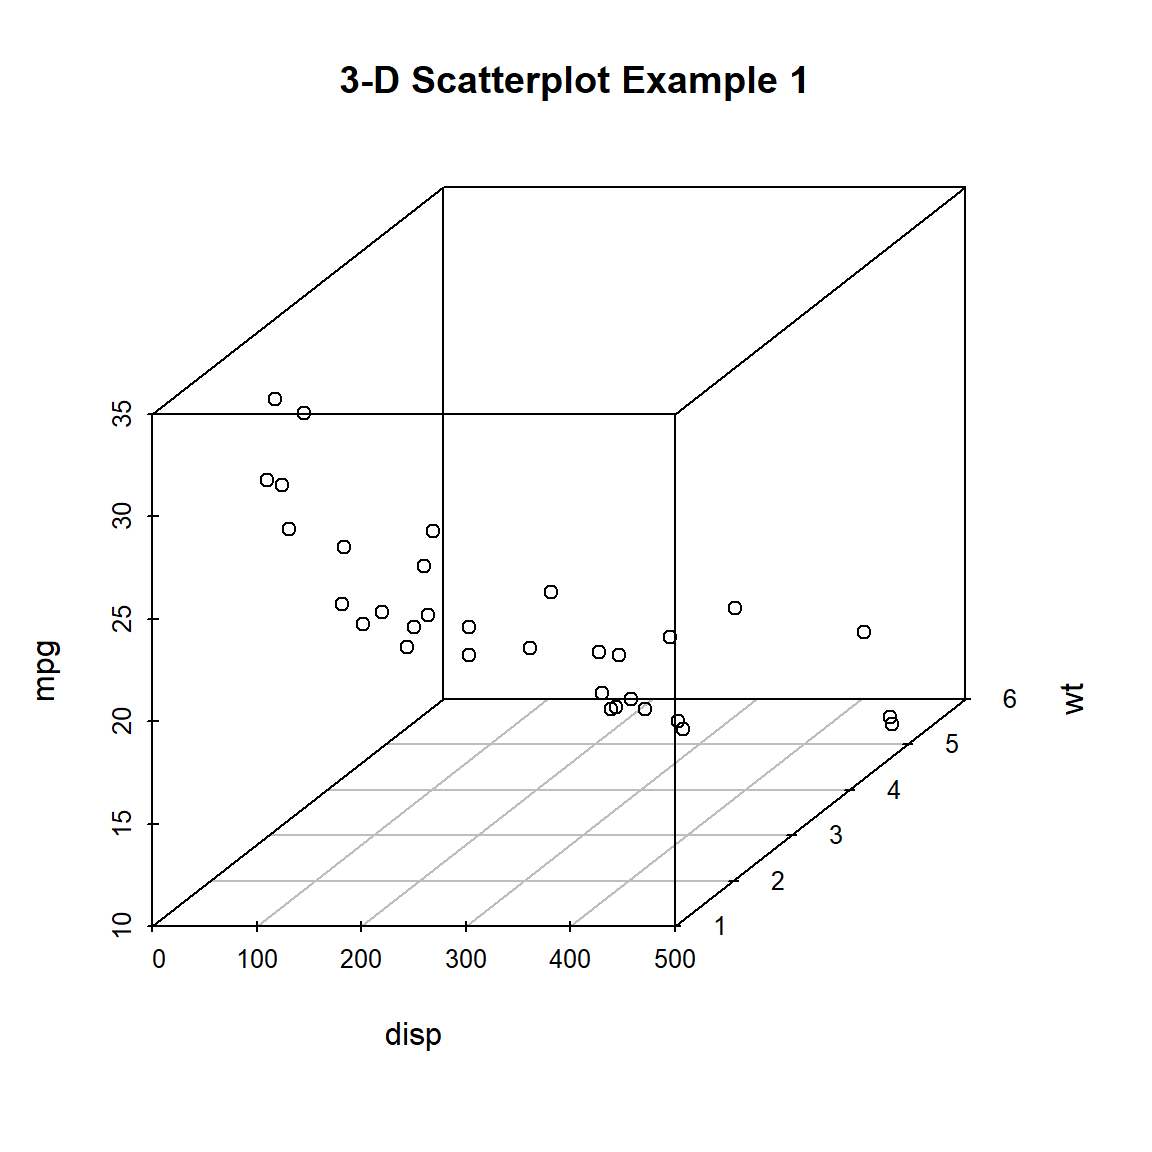 Basic 3-D scatterplot